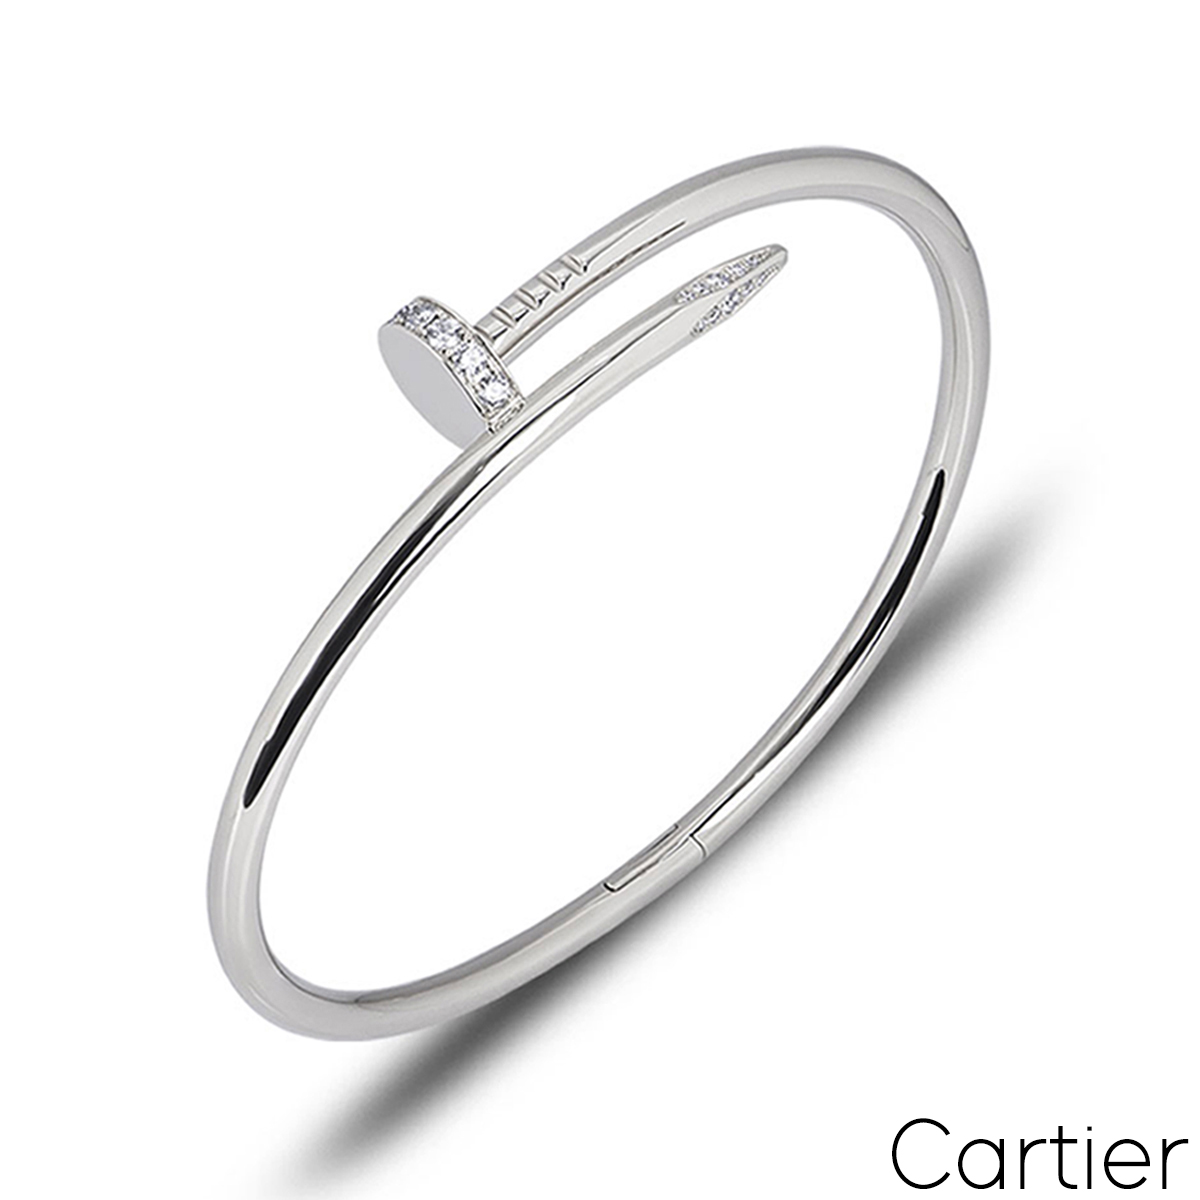 Cartier White Gold Diamond Juste Un Clou Bracelet Size 20 B6048720